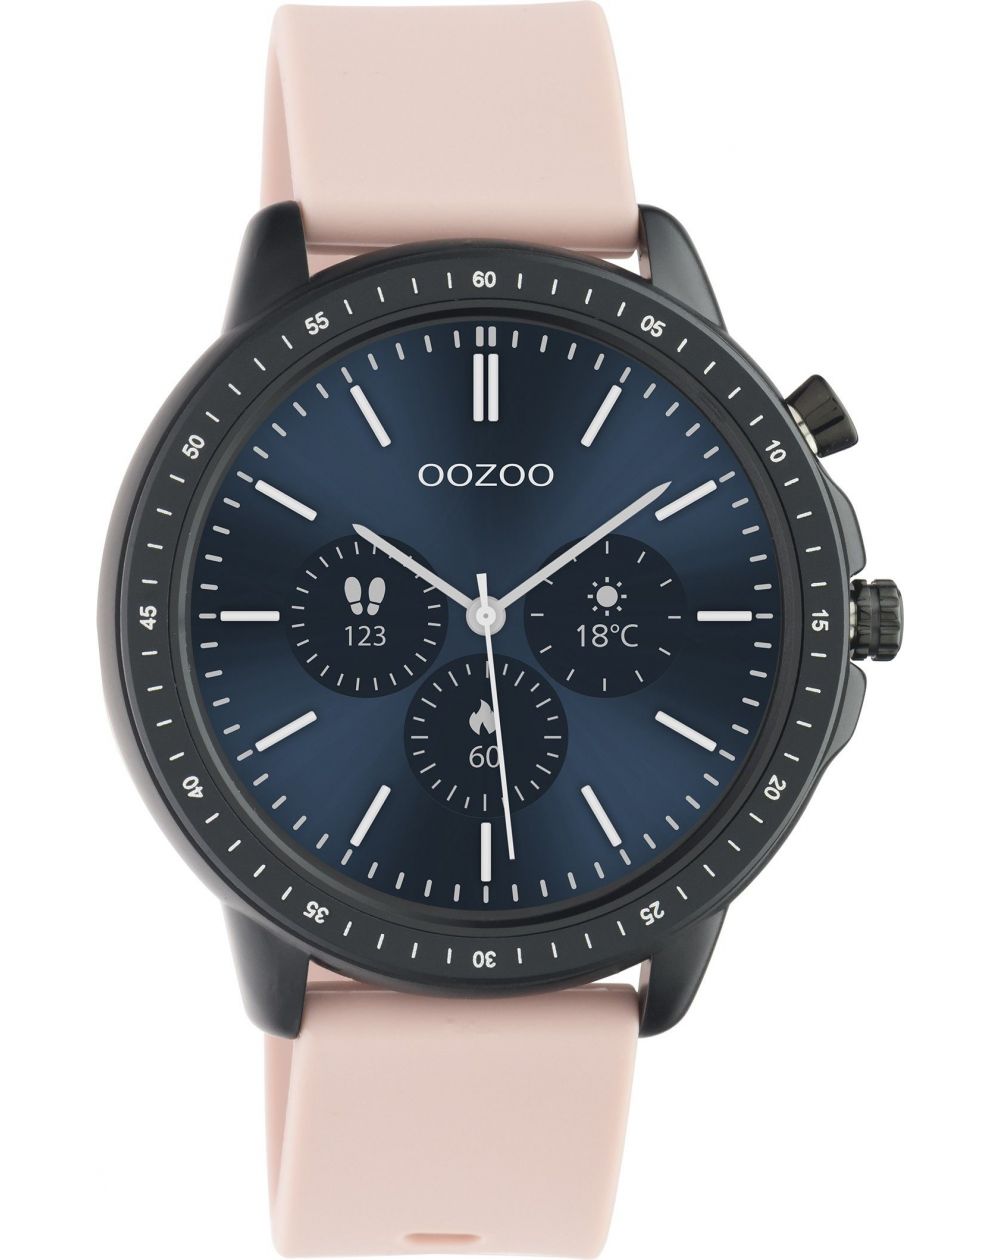 Montre Oozoo Q00329 - Smartwatch - Marque OOZOO - Livraison gratuite